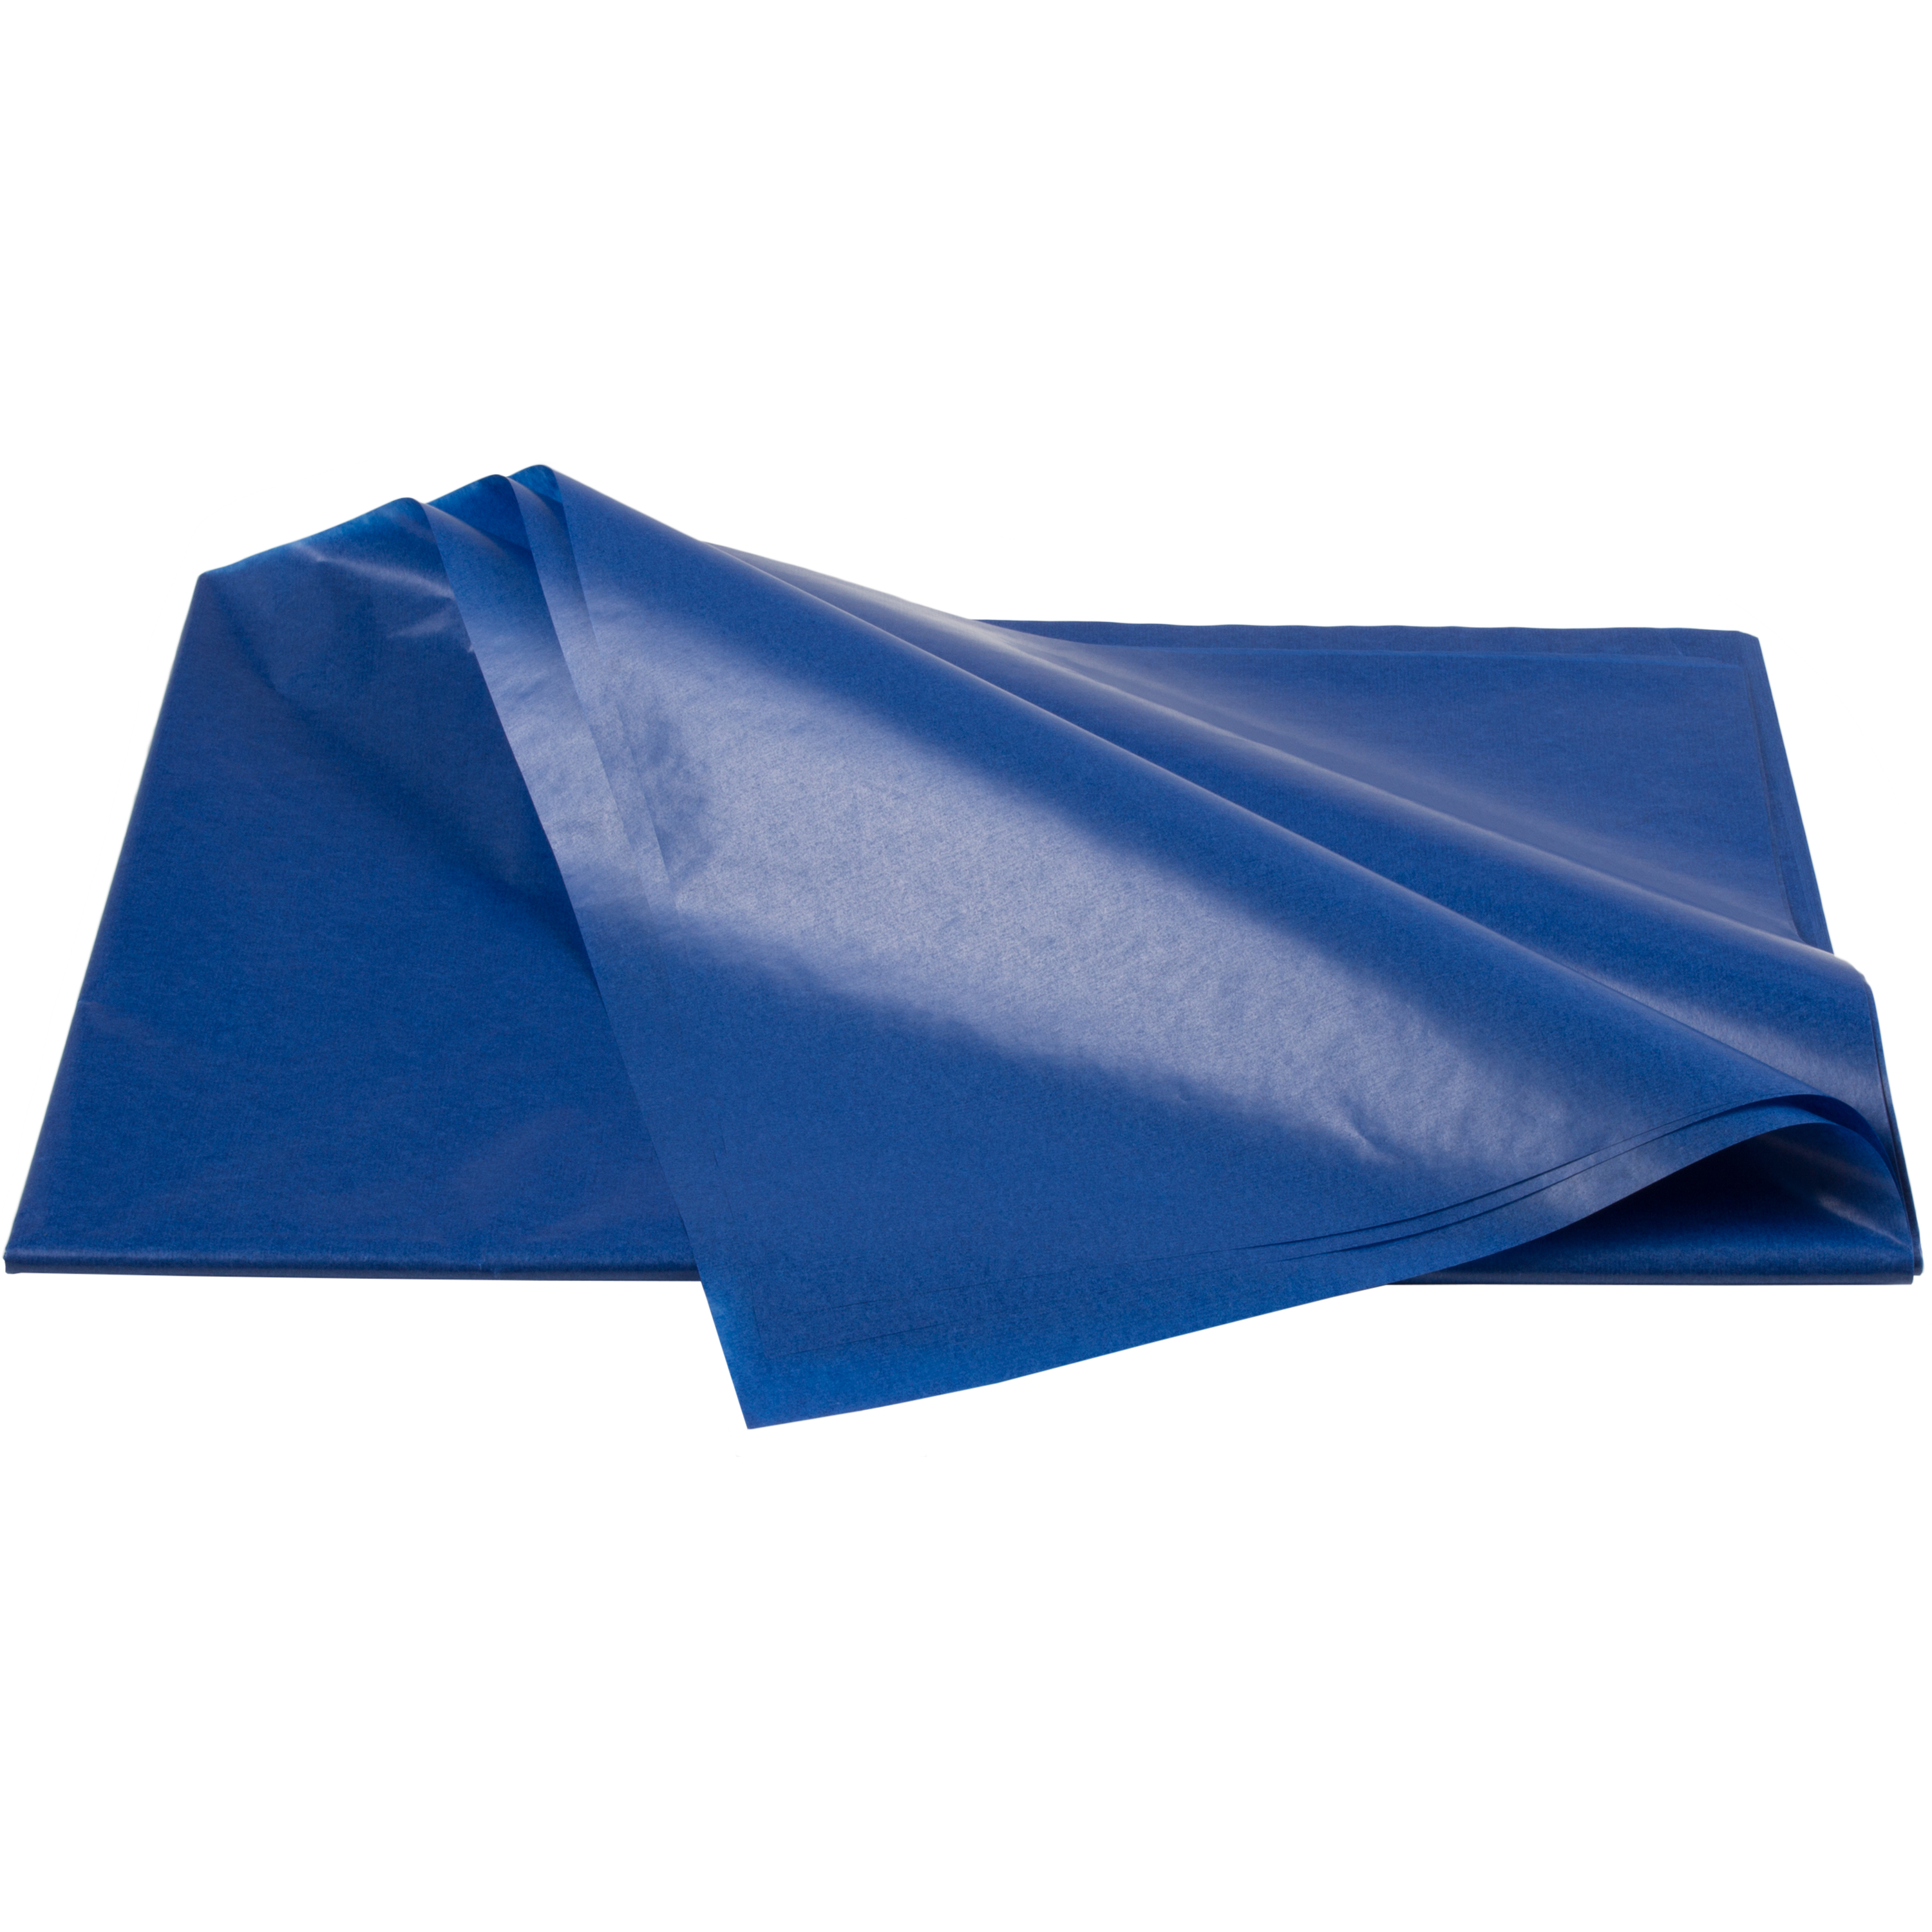 Transparentpapier dunkelblau, 42 g/m², 25 Bögen